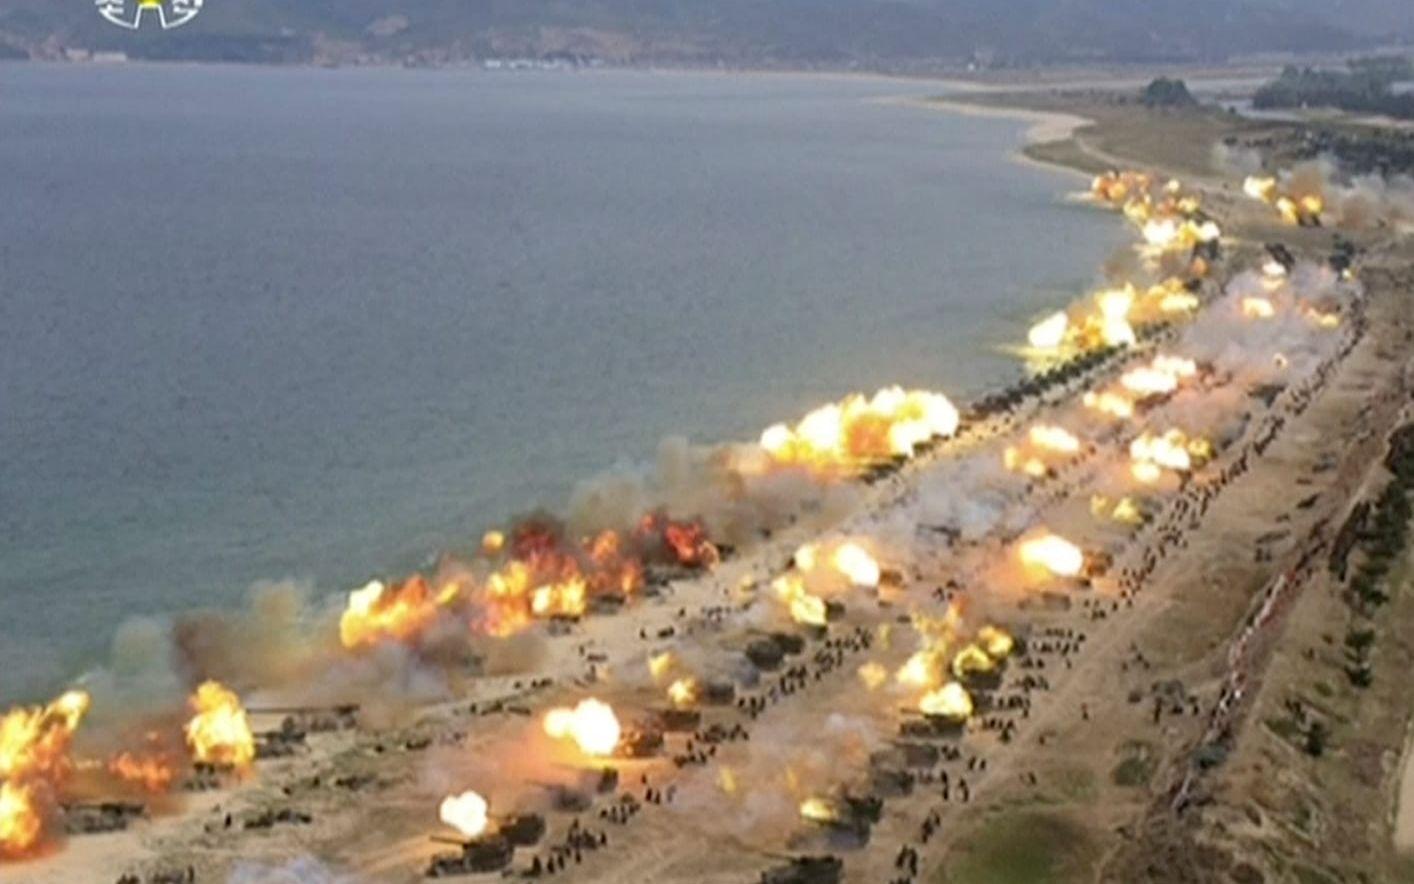 Mellan 300 och 400 artilleripjäser tros ha deltagit i den nordkoreanska övningen. BILD: TT